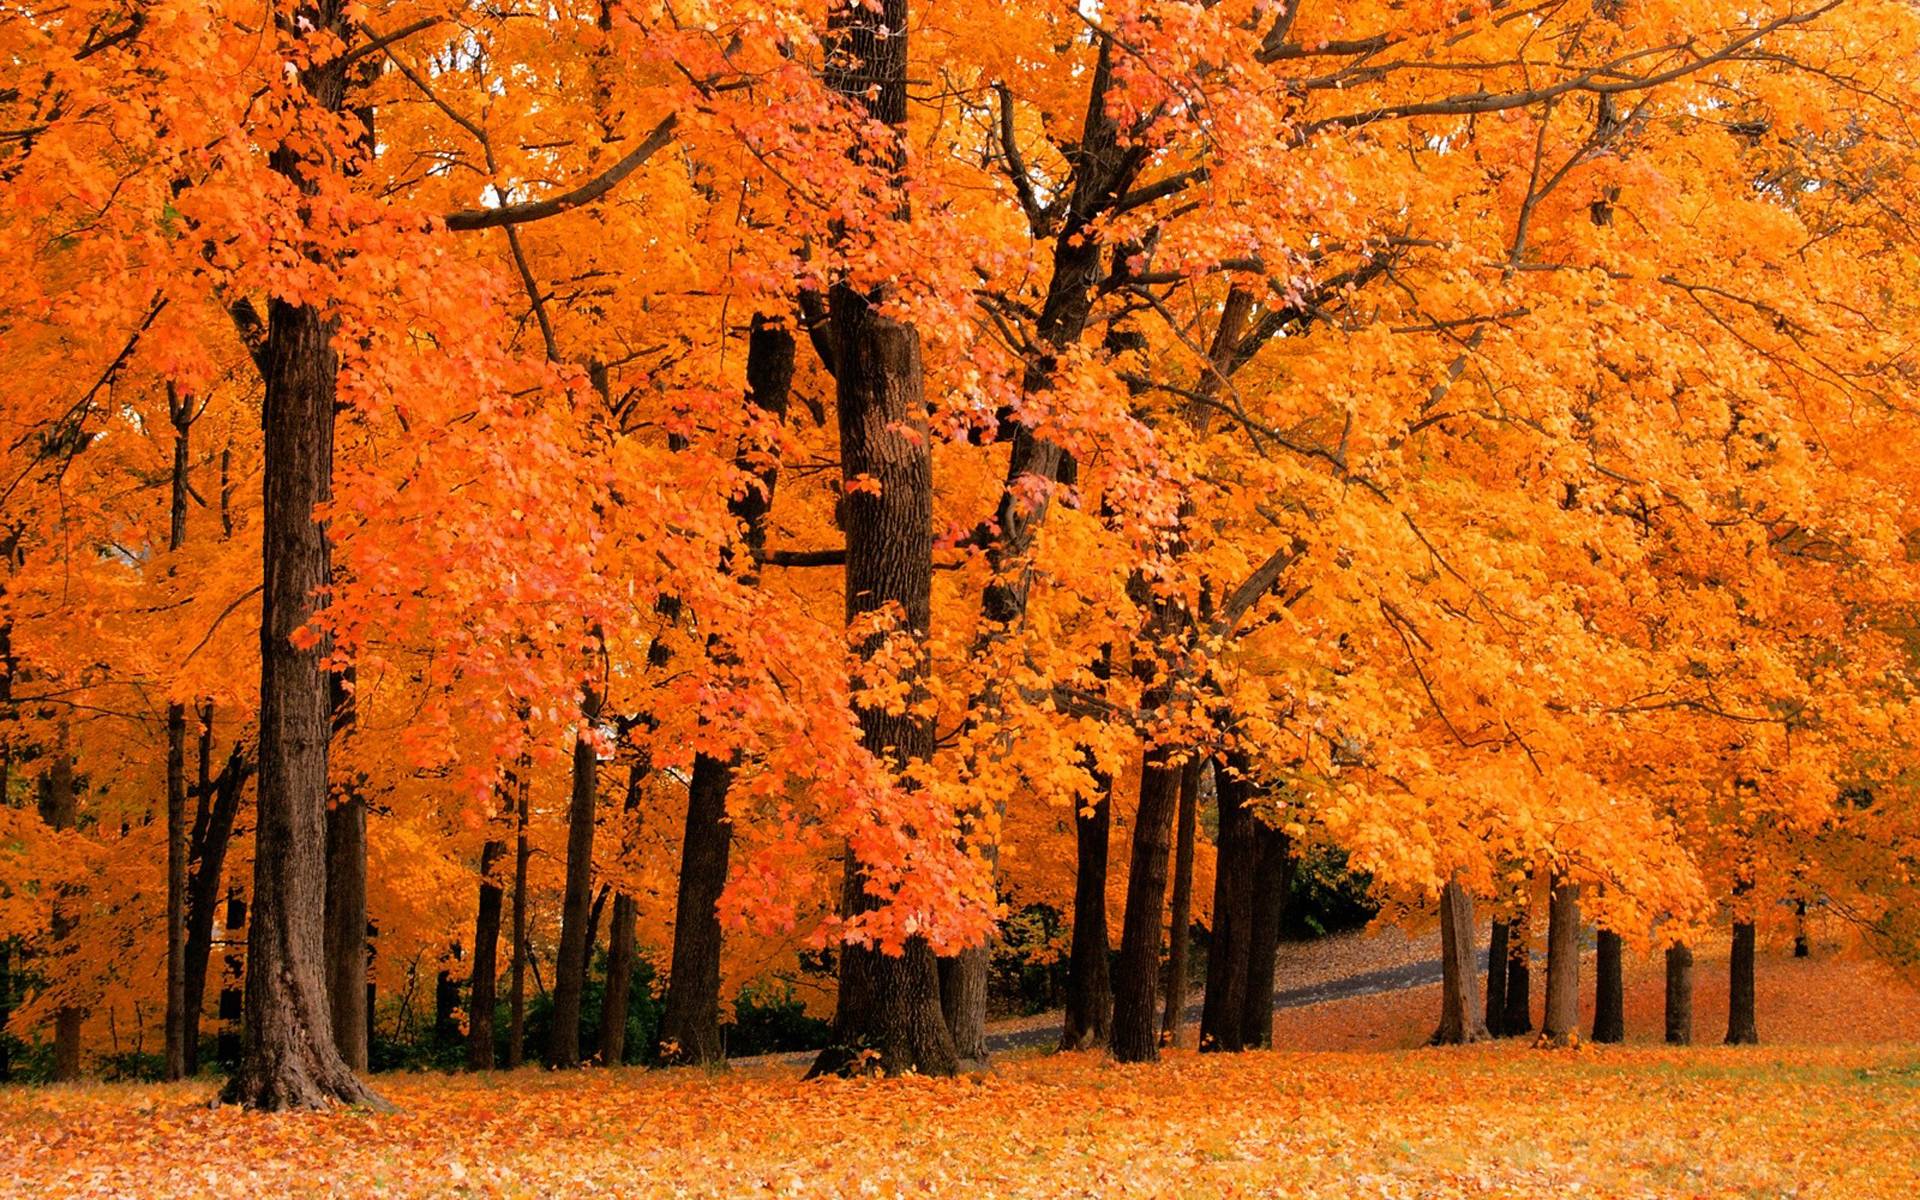 autumn leaves falling background | L'Automne / Autumn | Pinterest ...